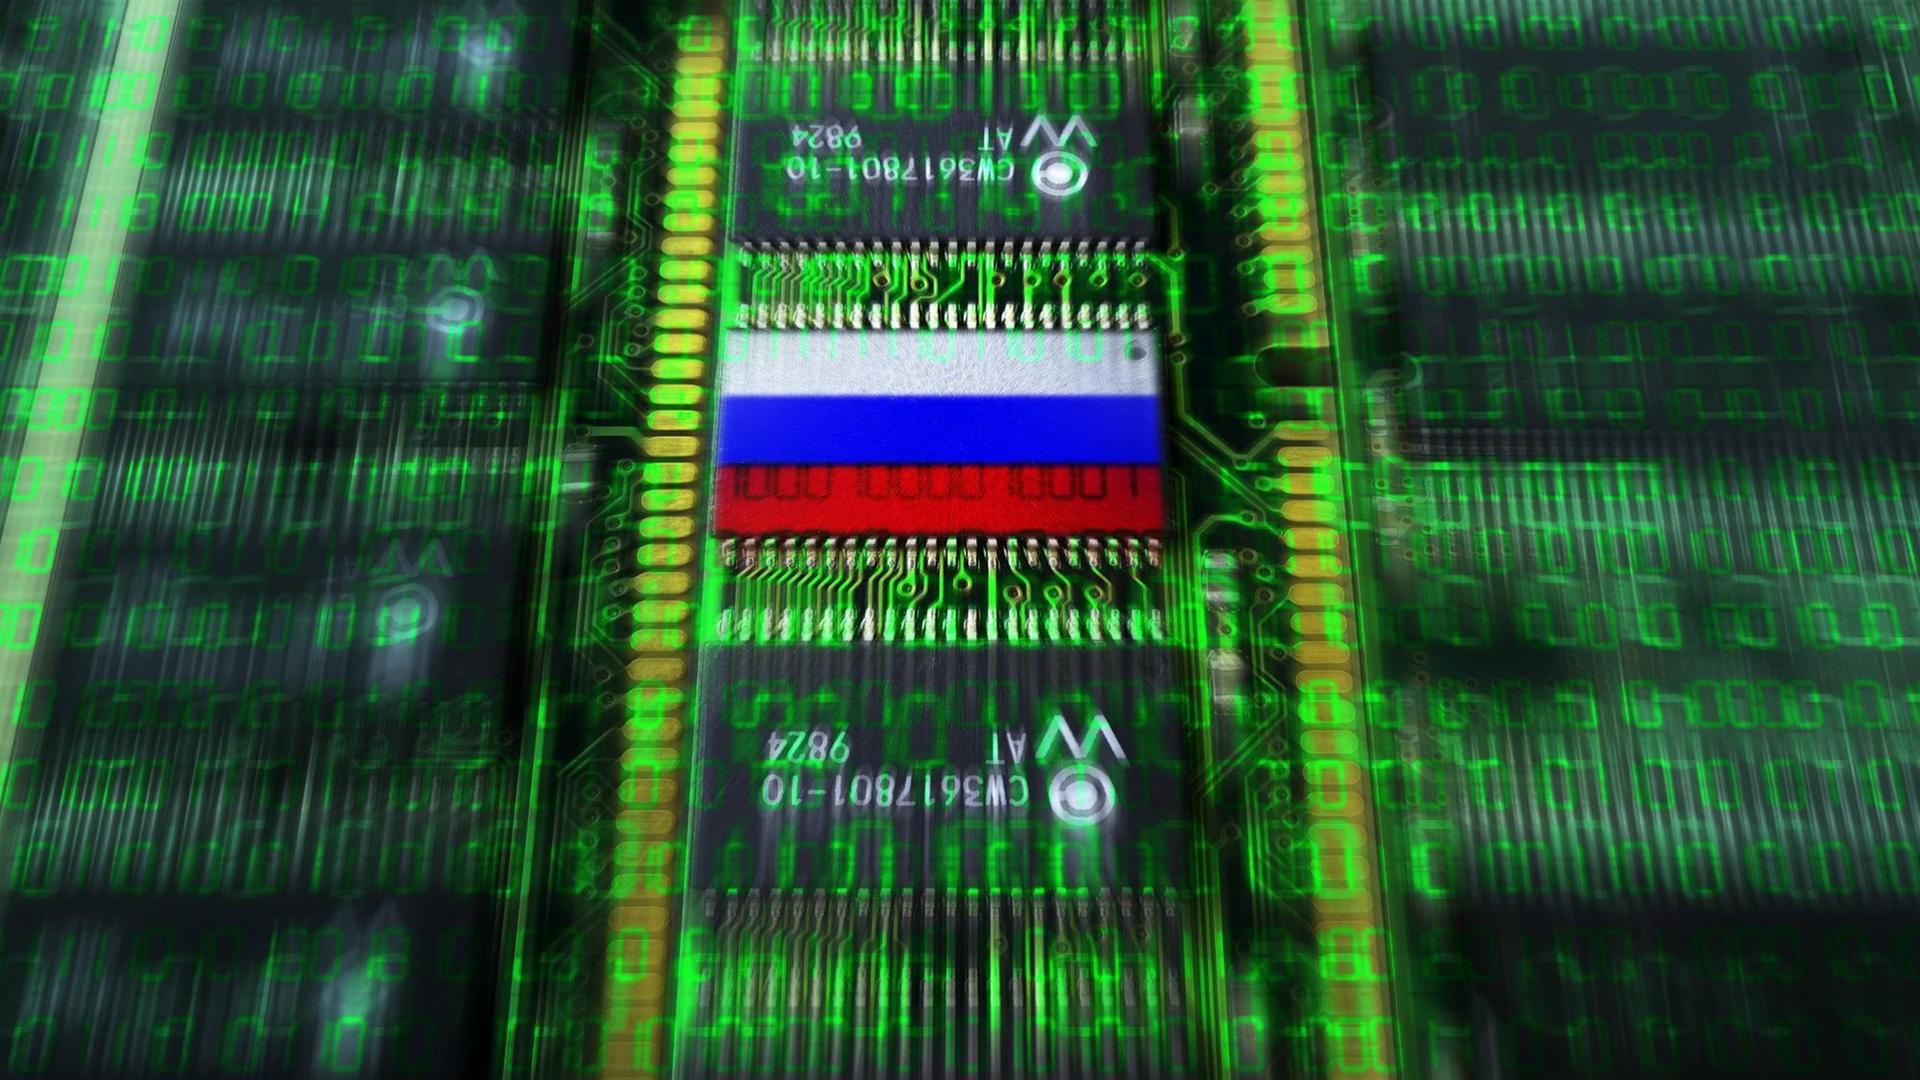 Eine Bildmomntage:Auf Computerplatinen ist eine Russland-Fahne abgebildet.